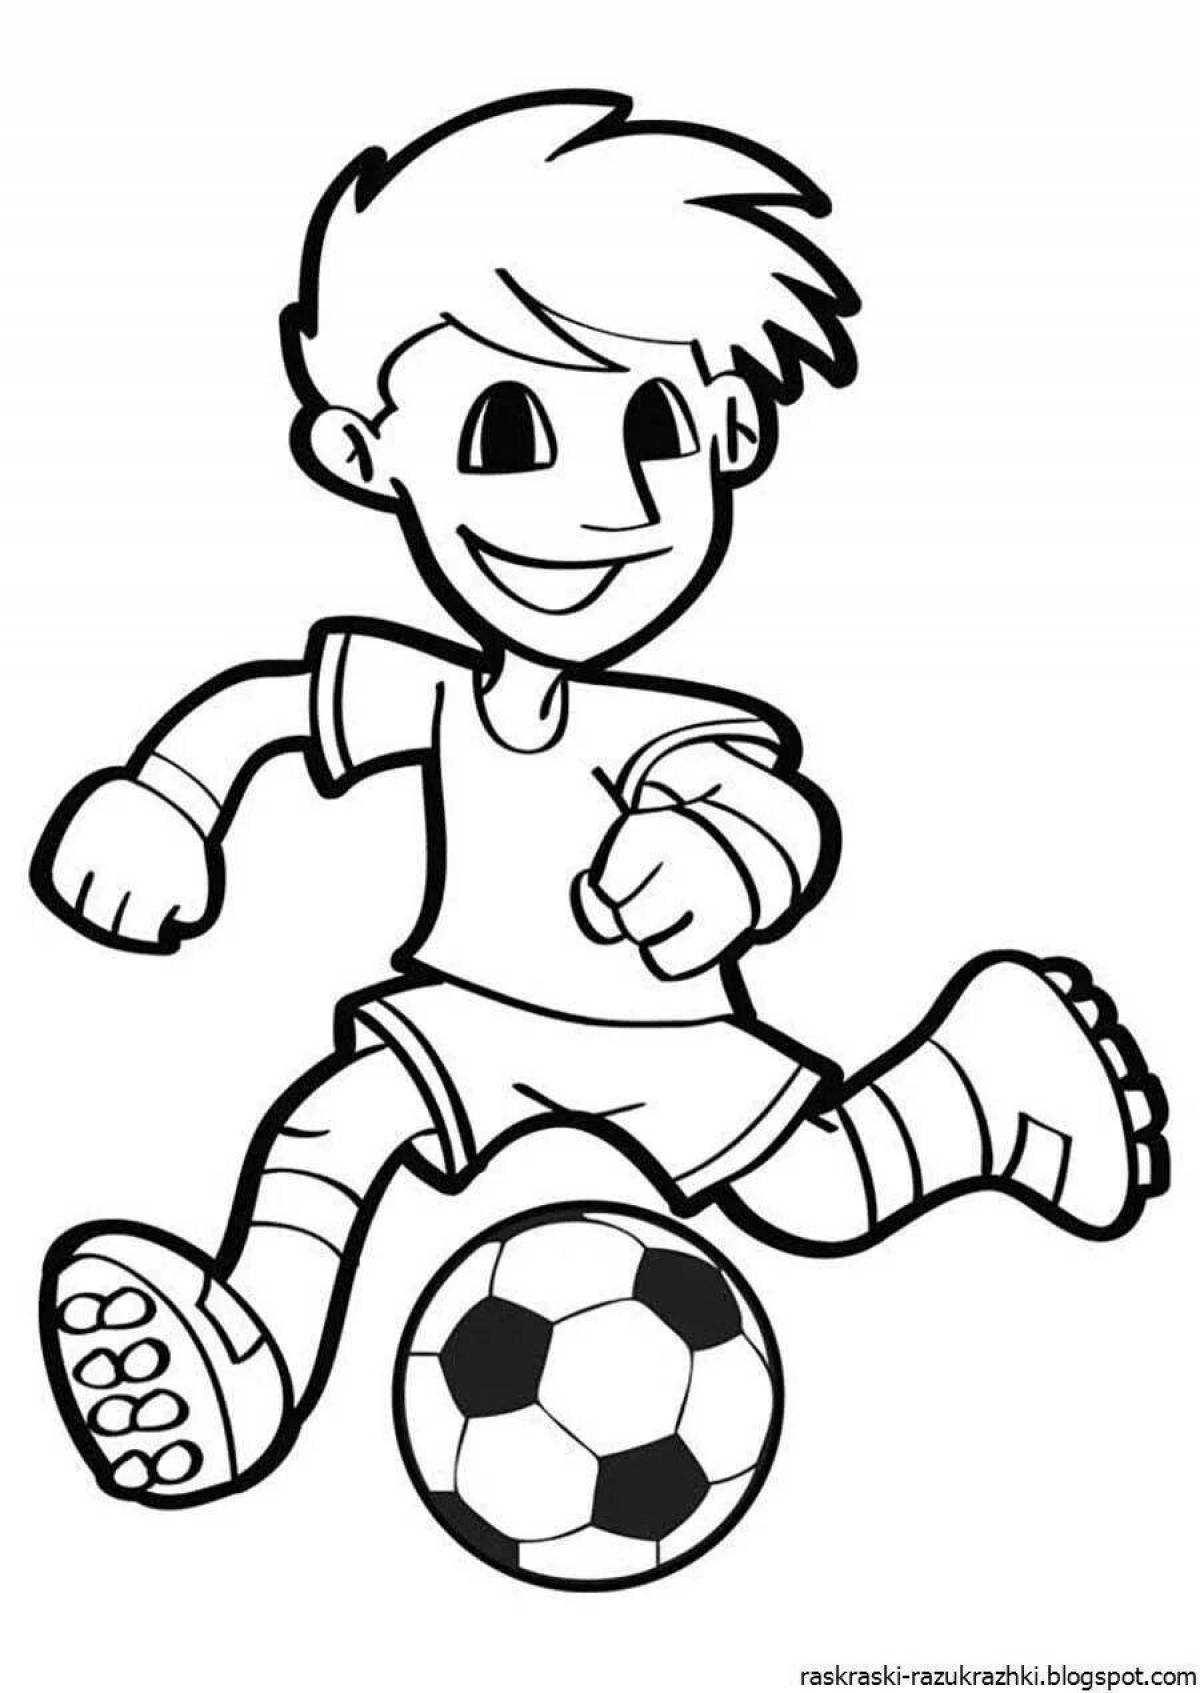 Раскраска мальчик-прилежный футболист